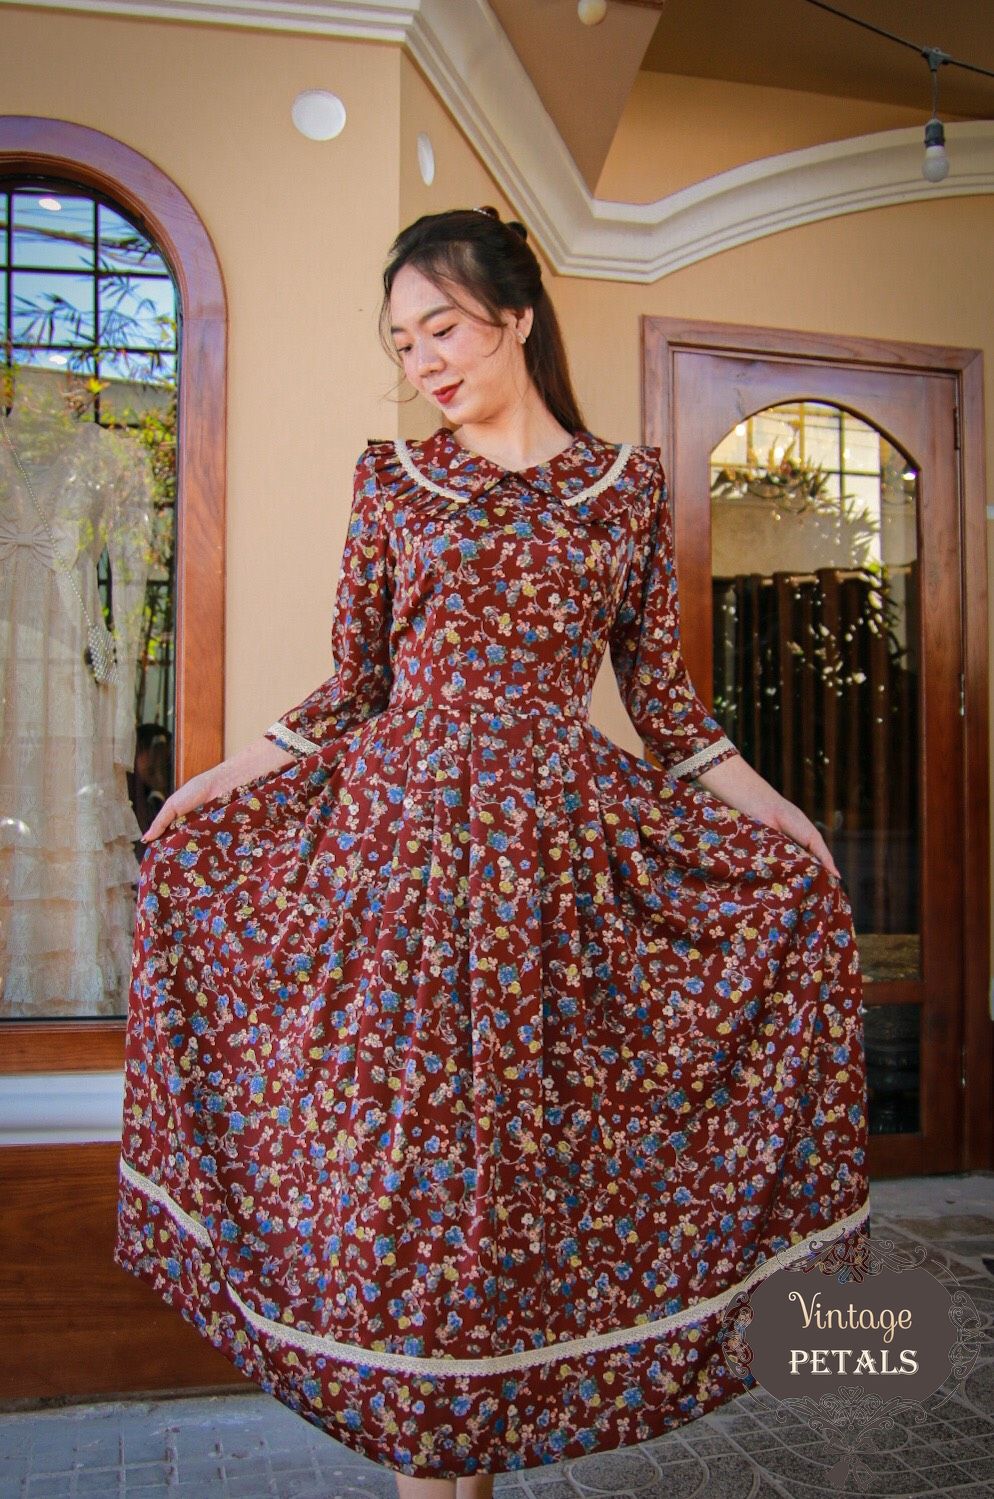 Nhẹ nhàng và nền nã với váy dài vintage hoạ tiết hoa nhí  Thời trang   Việt Giải Trí